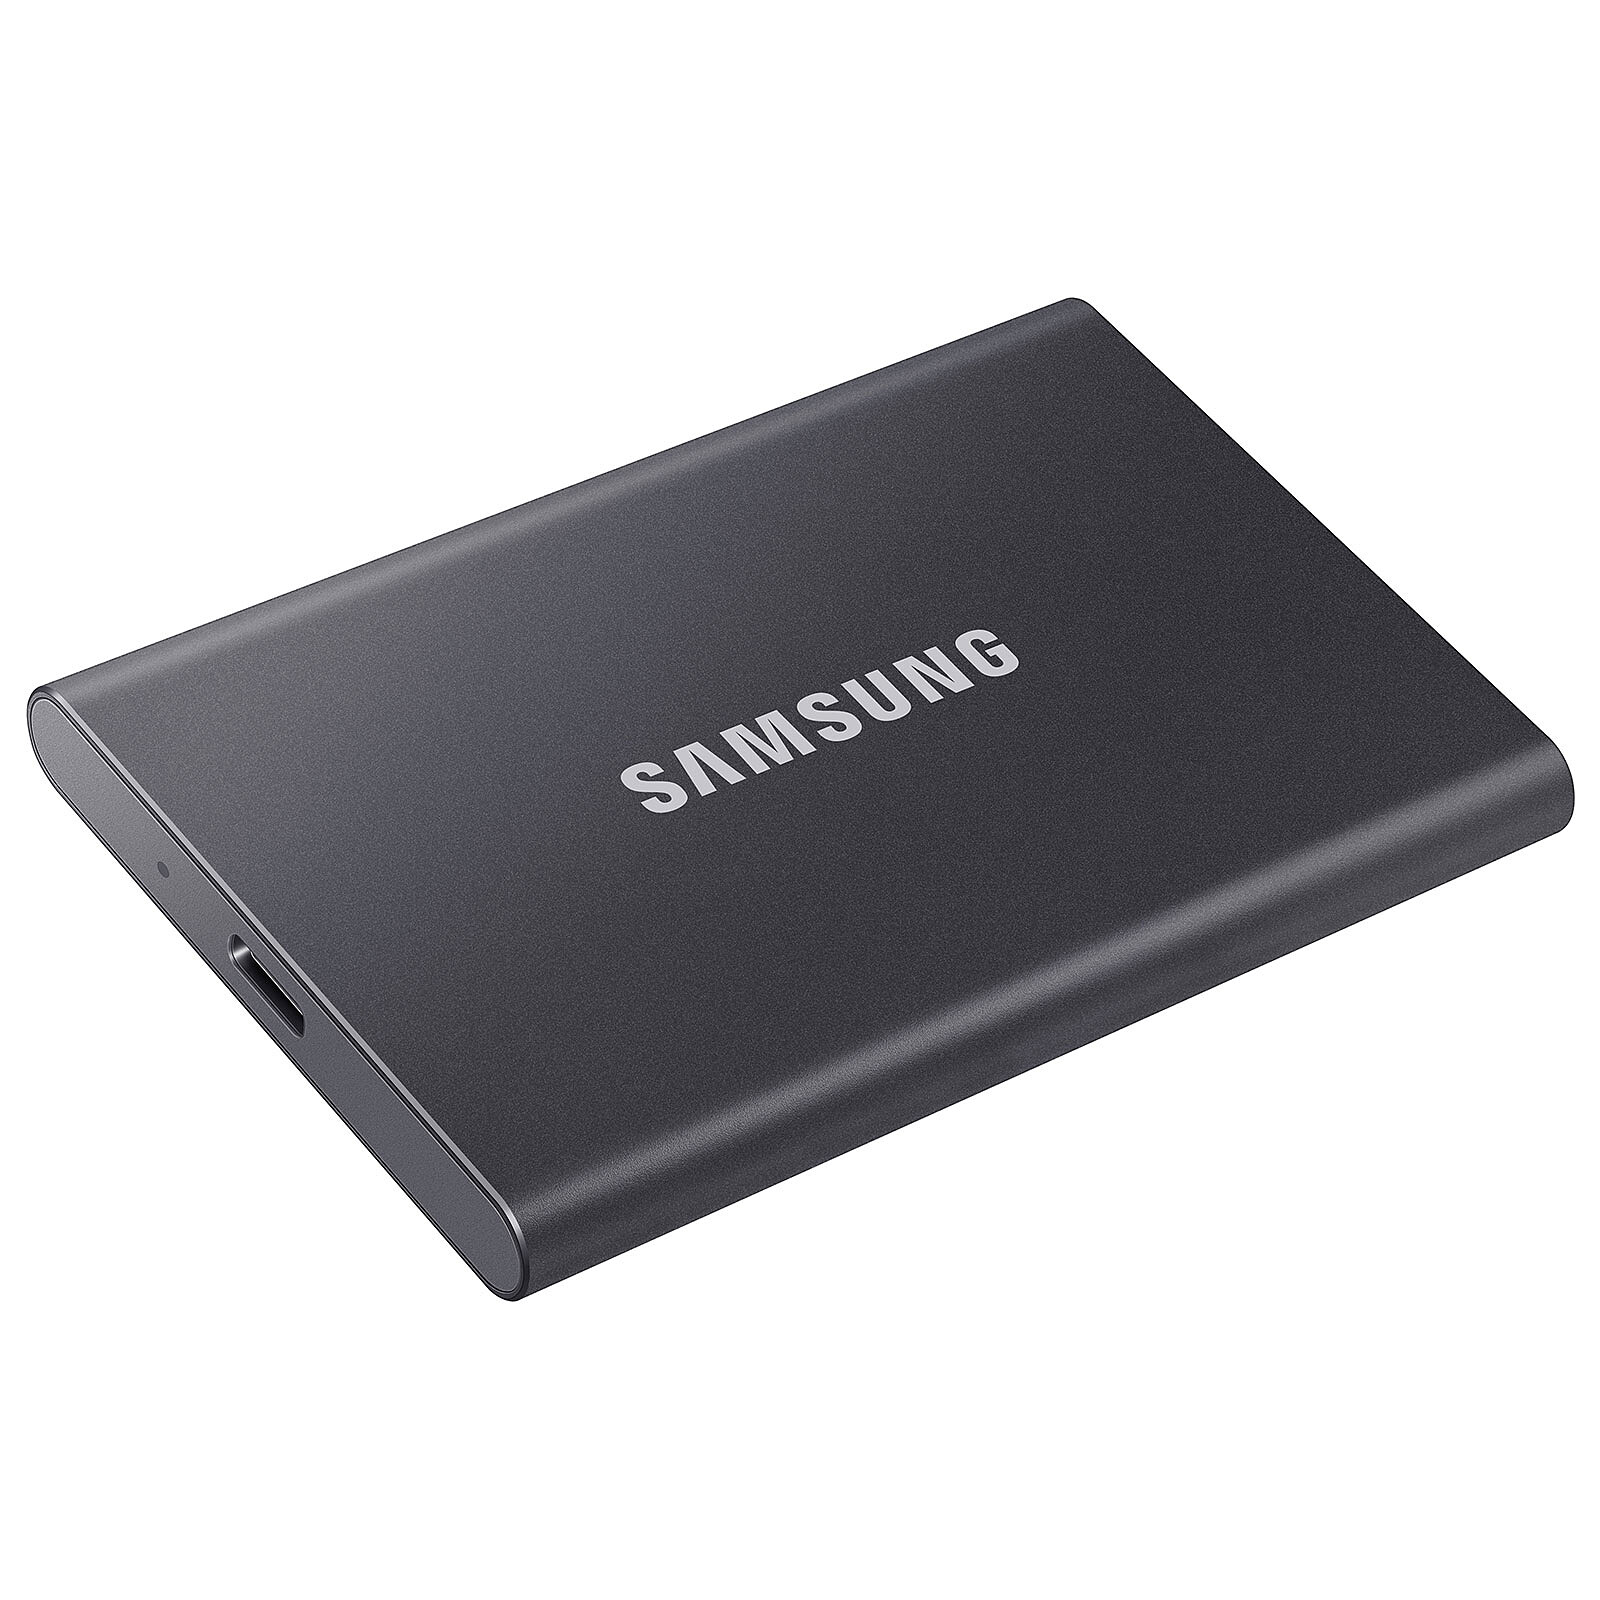 Ce disque SSD externe portable Samsung à -55% est le bon plan du jour à  saisir chez  